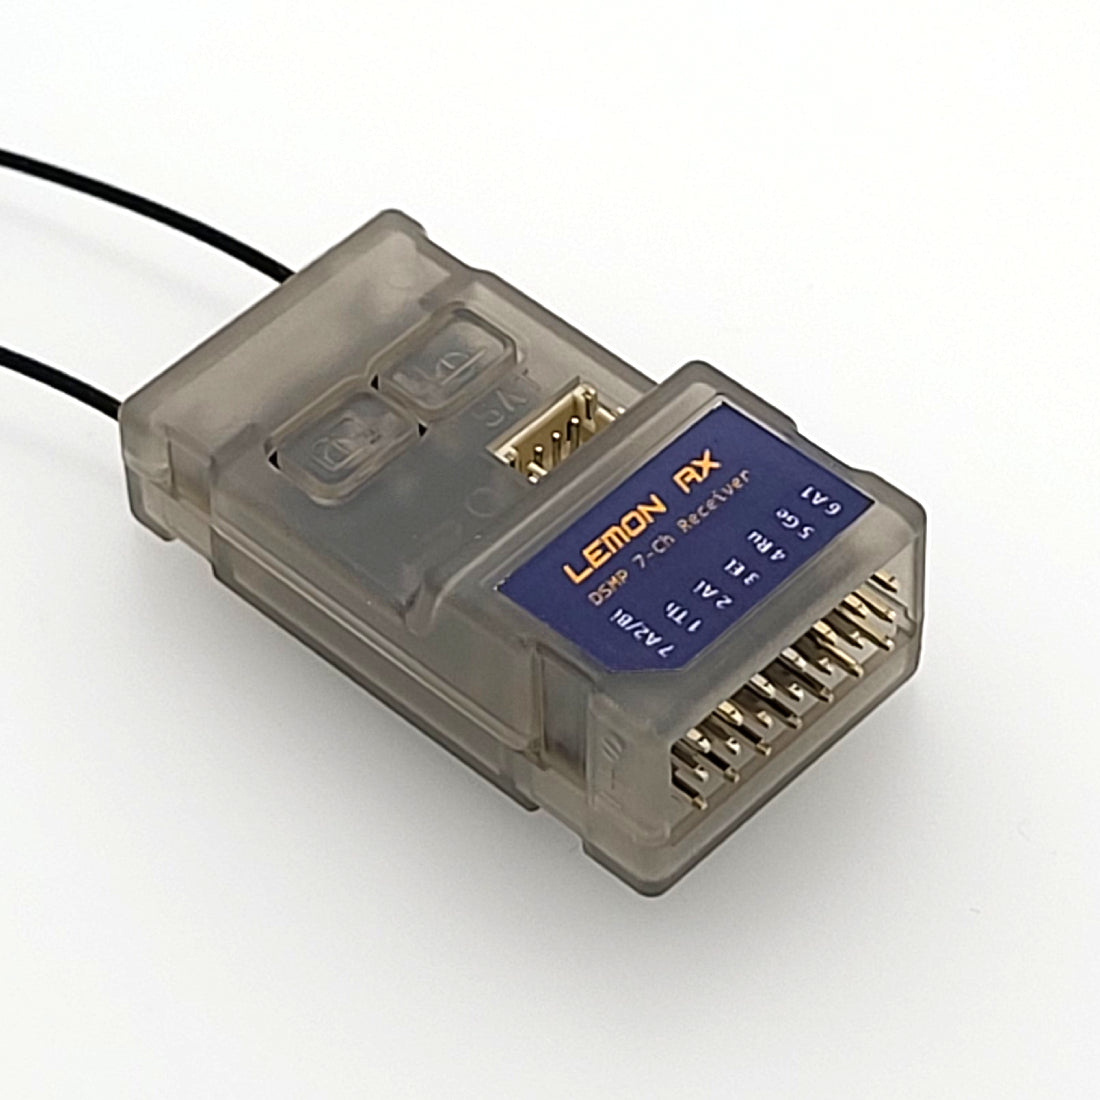 Lemon Rx DSMP 7-Channel Receiver with Diversity Antenna DSMX DSM2 Compatible